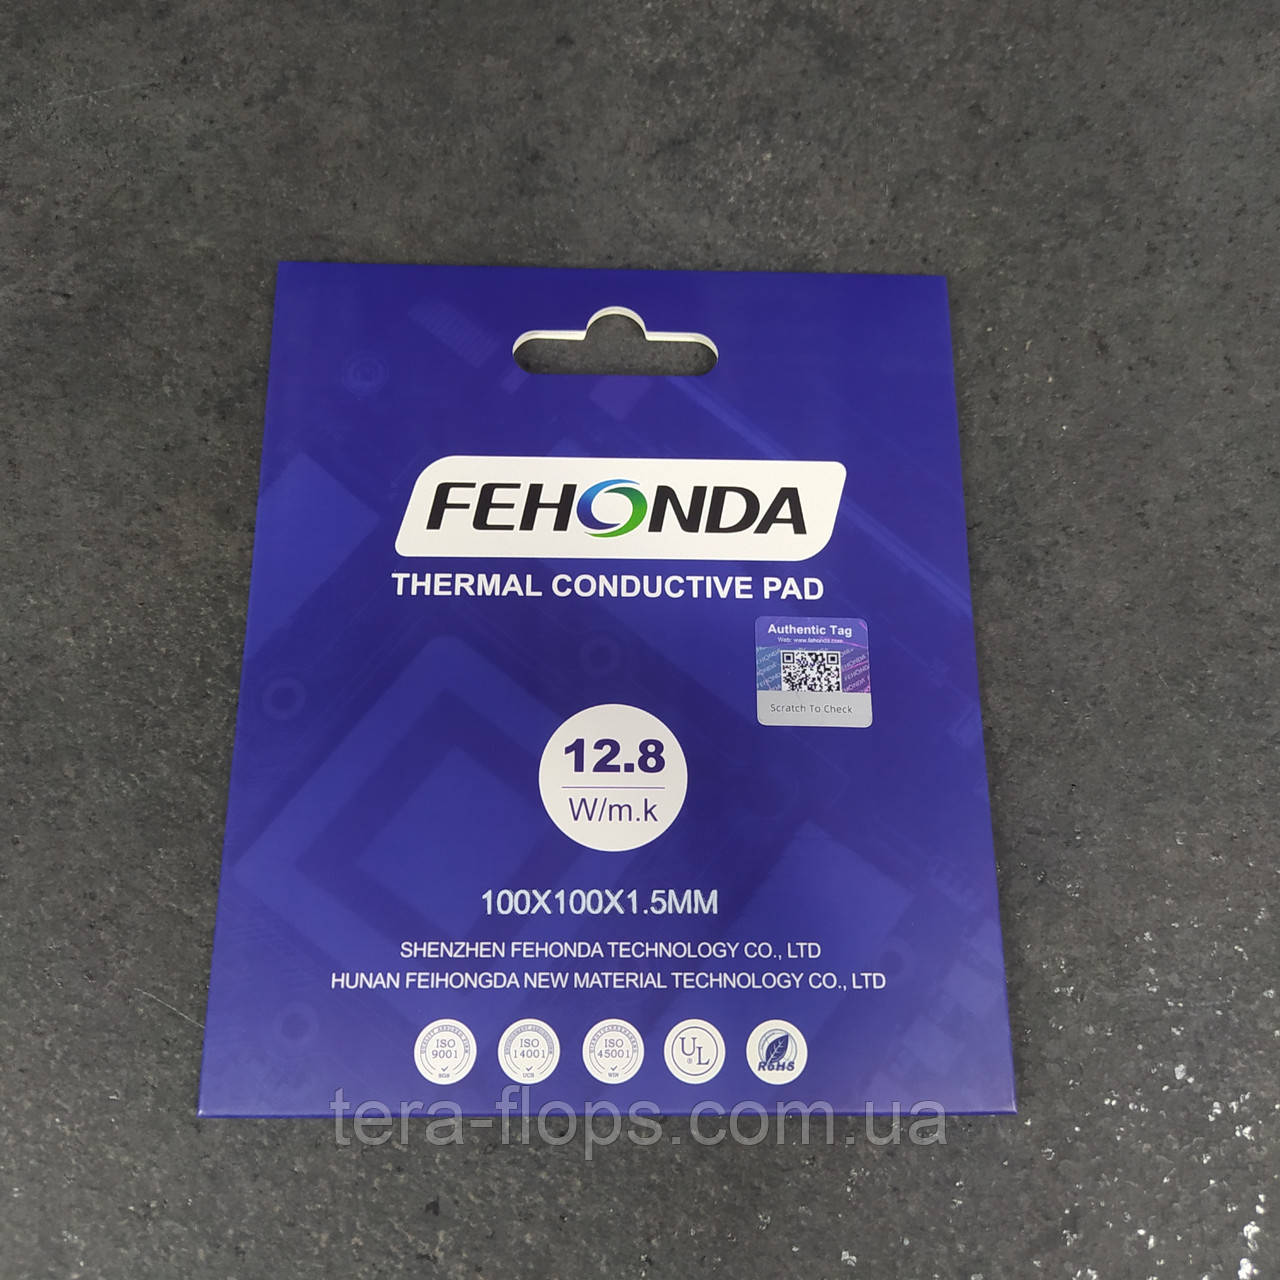 Термопрокладка Fehonda Original 100x100x1.5mm (12.8W/m*k) (TF)